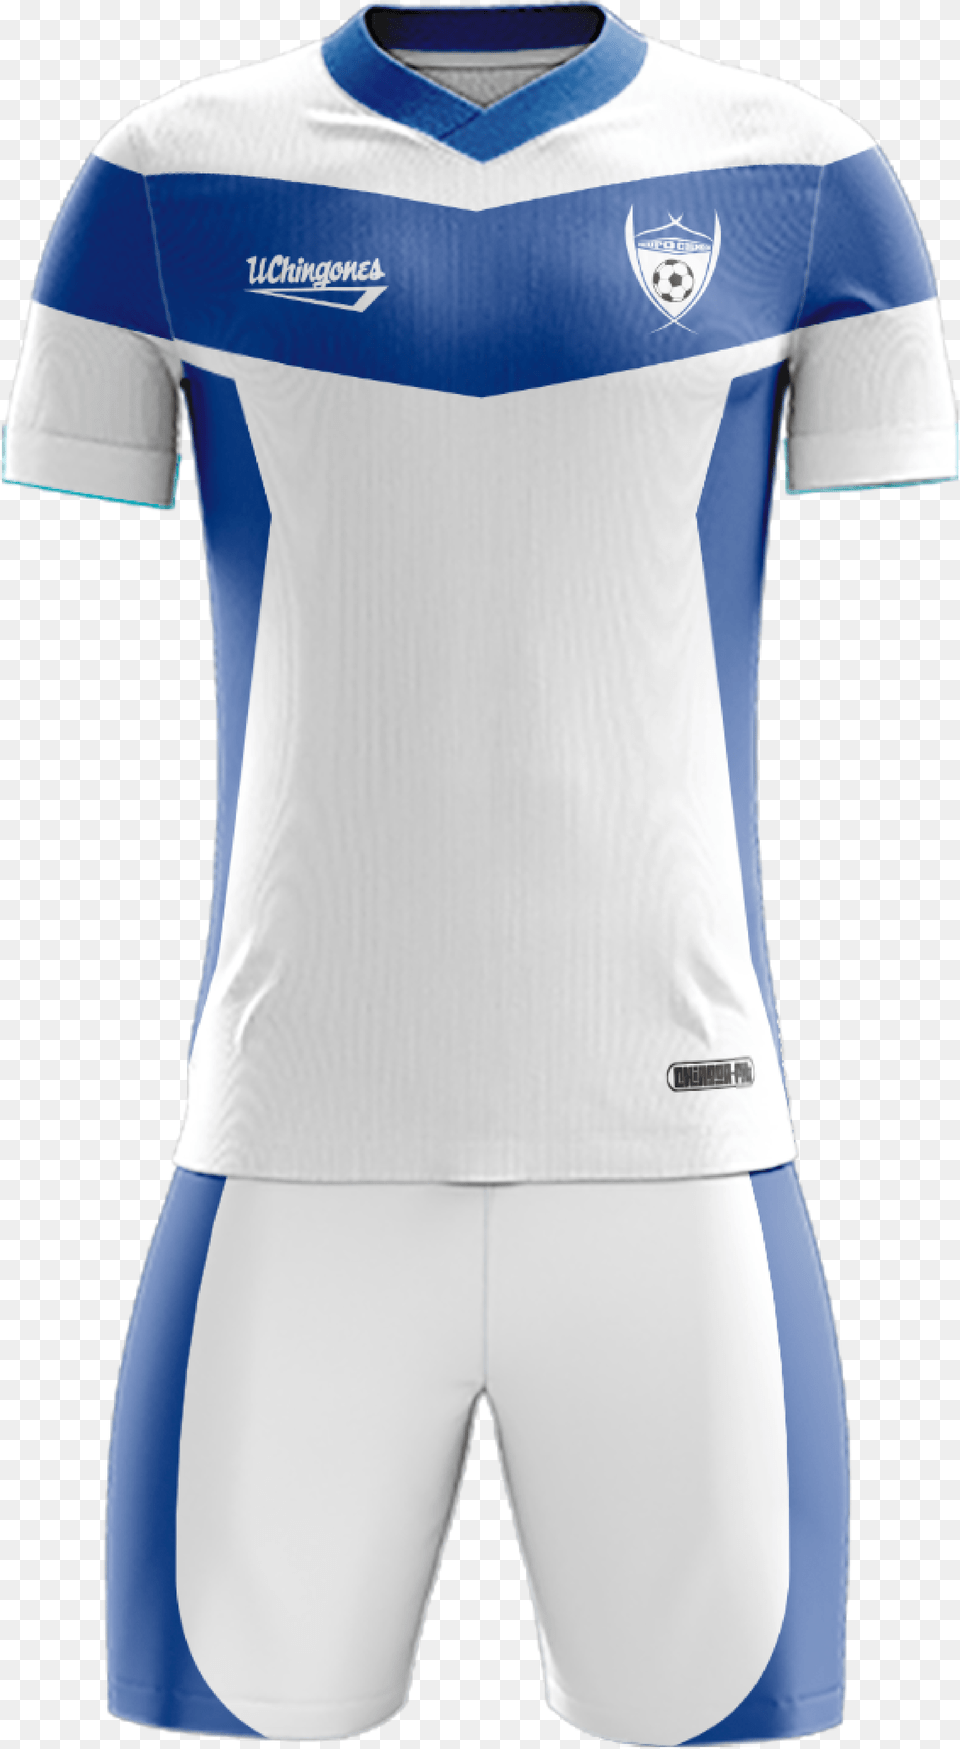 Futbol Uniformes De Futbol, Clothing, Shirt, Jersey, Adult Free Transparent Png